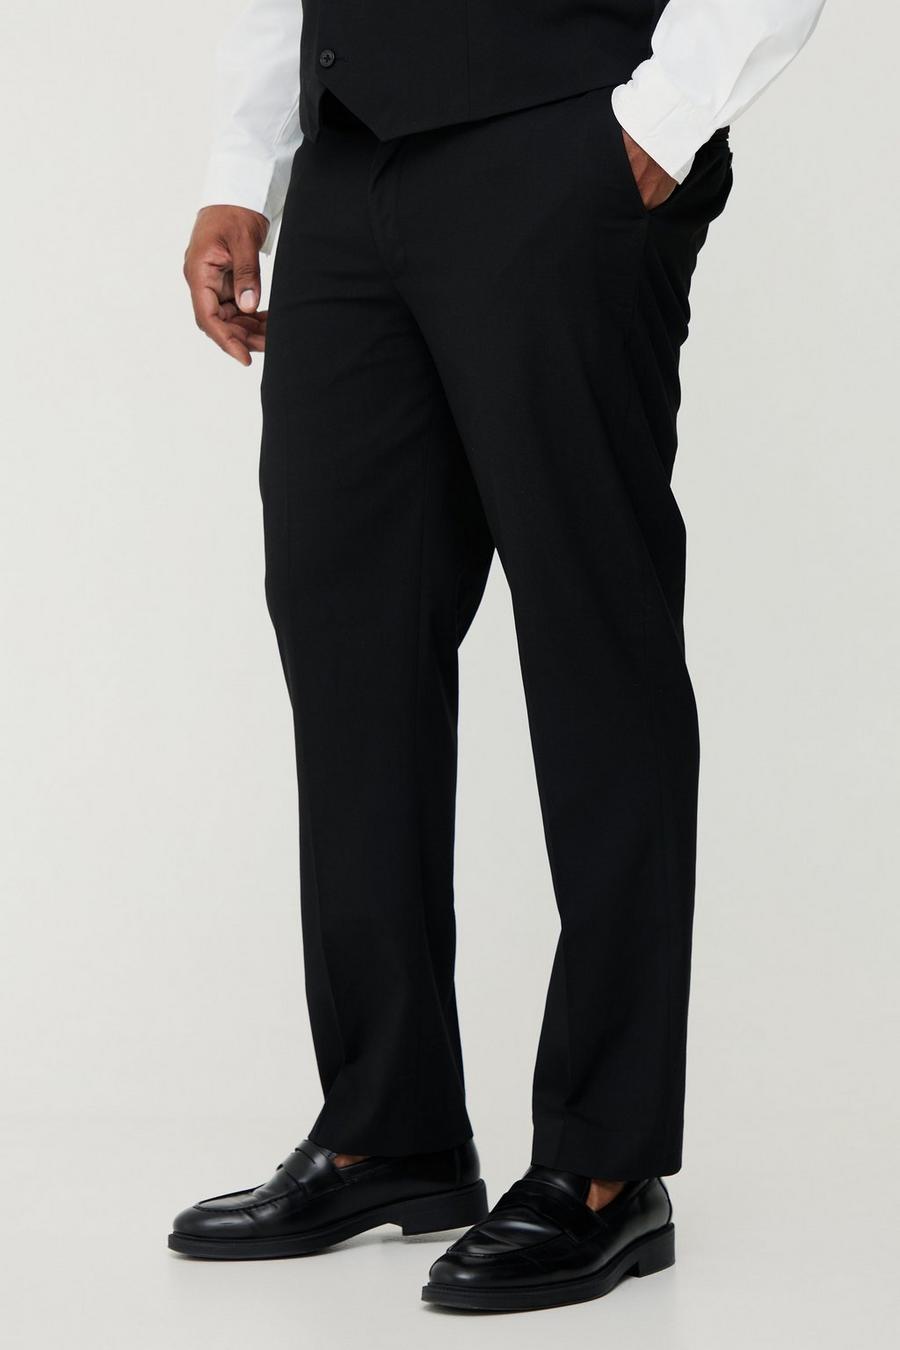 Pantalón Plus básico de traje Regular negro, Black